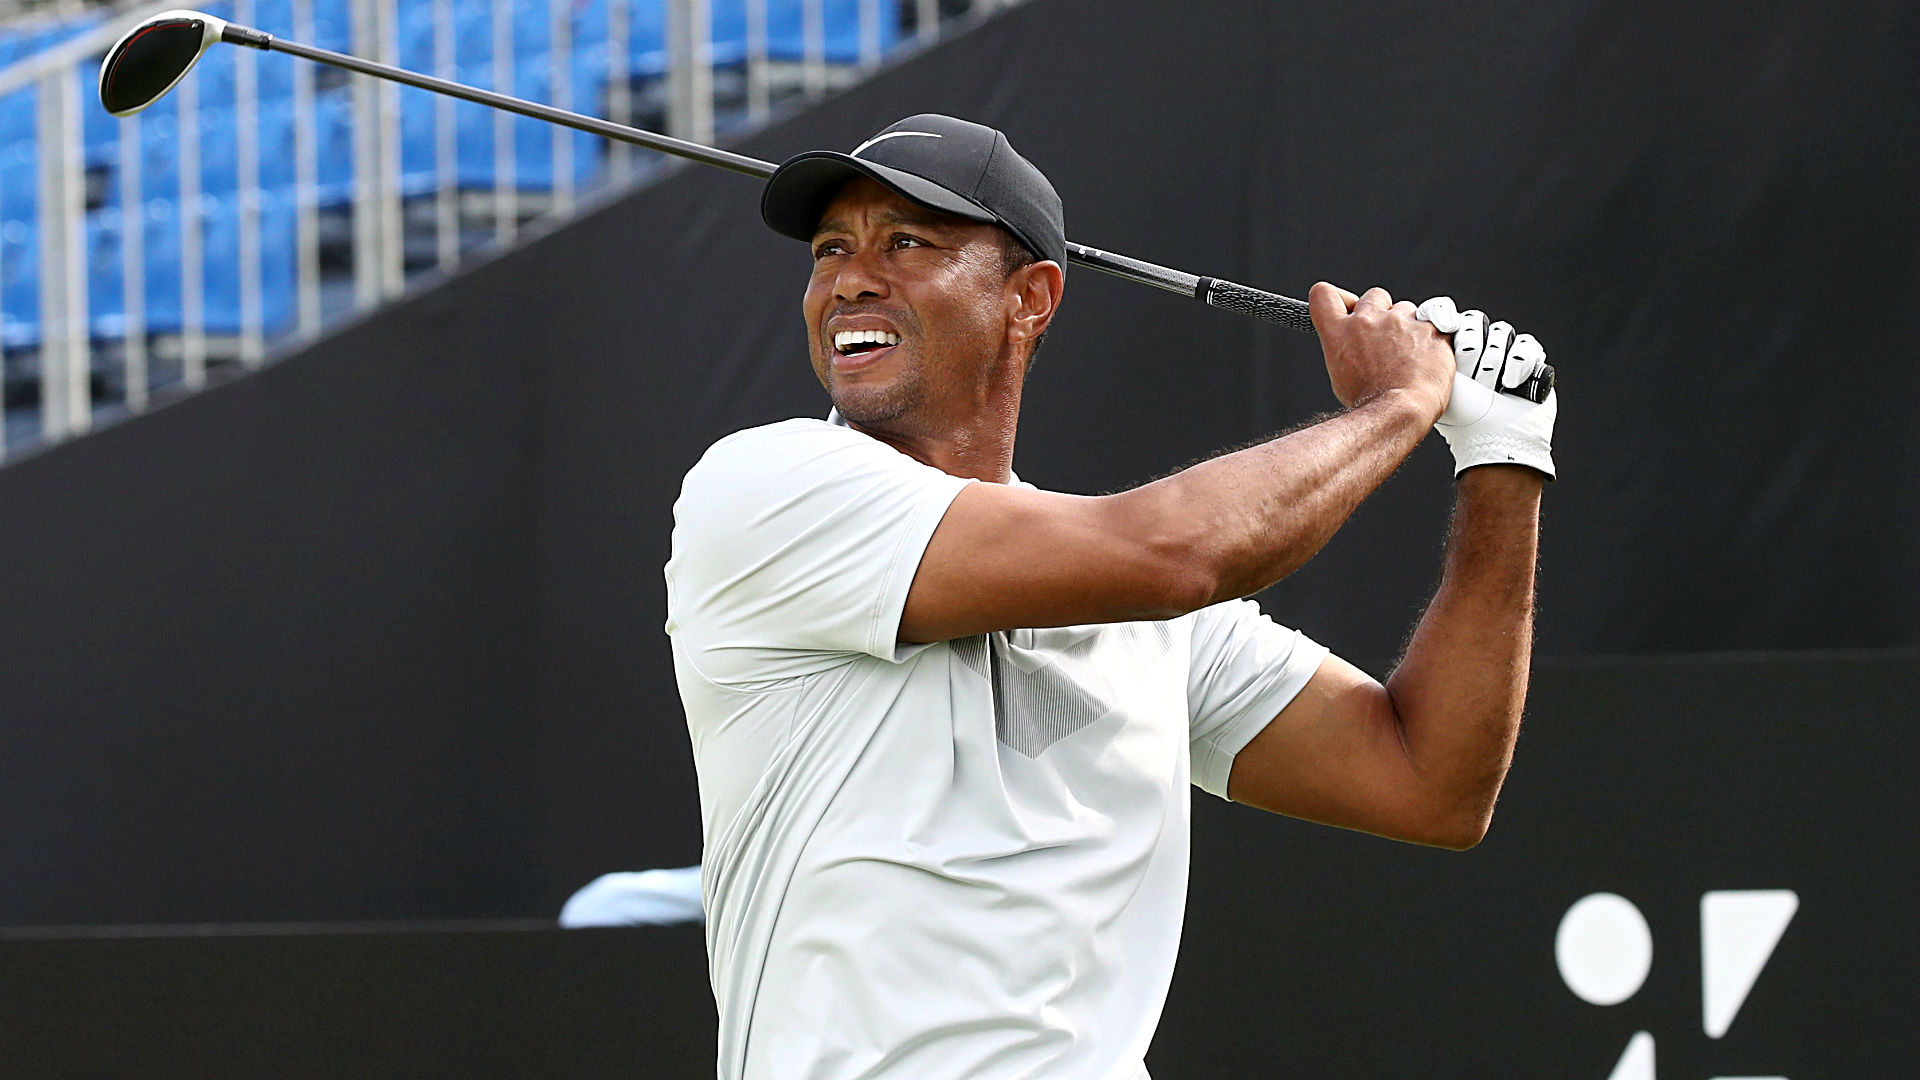 Tiger Woods độc chiếm ngôi đầu Zozo Championship sau vòng 2